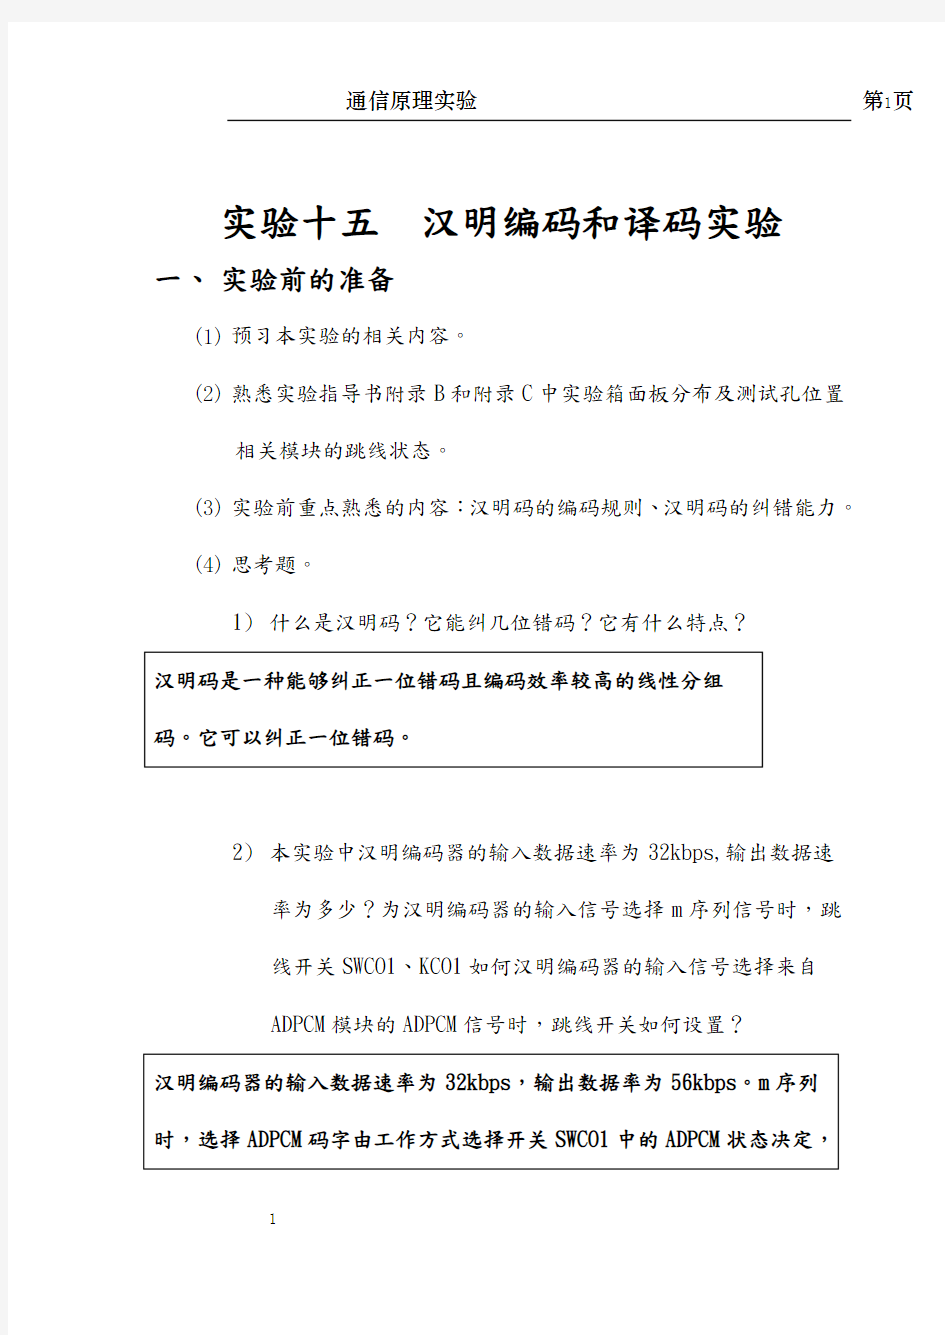 北京交通大学-通信原理实验-汉明编码实验报告